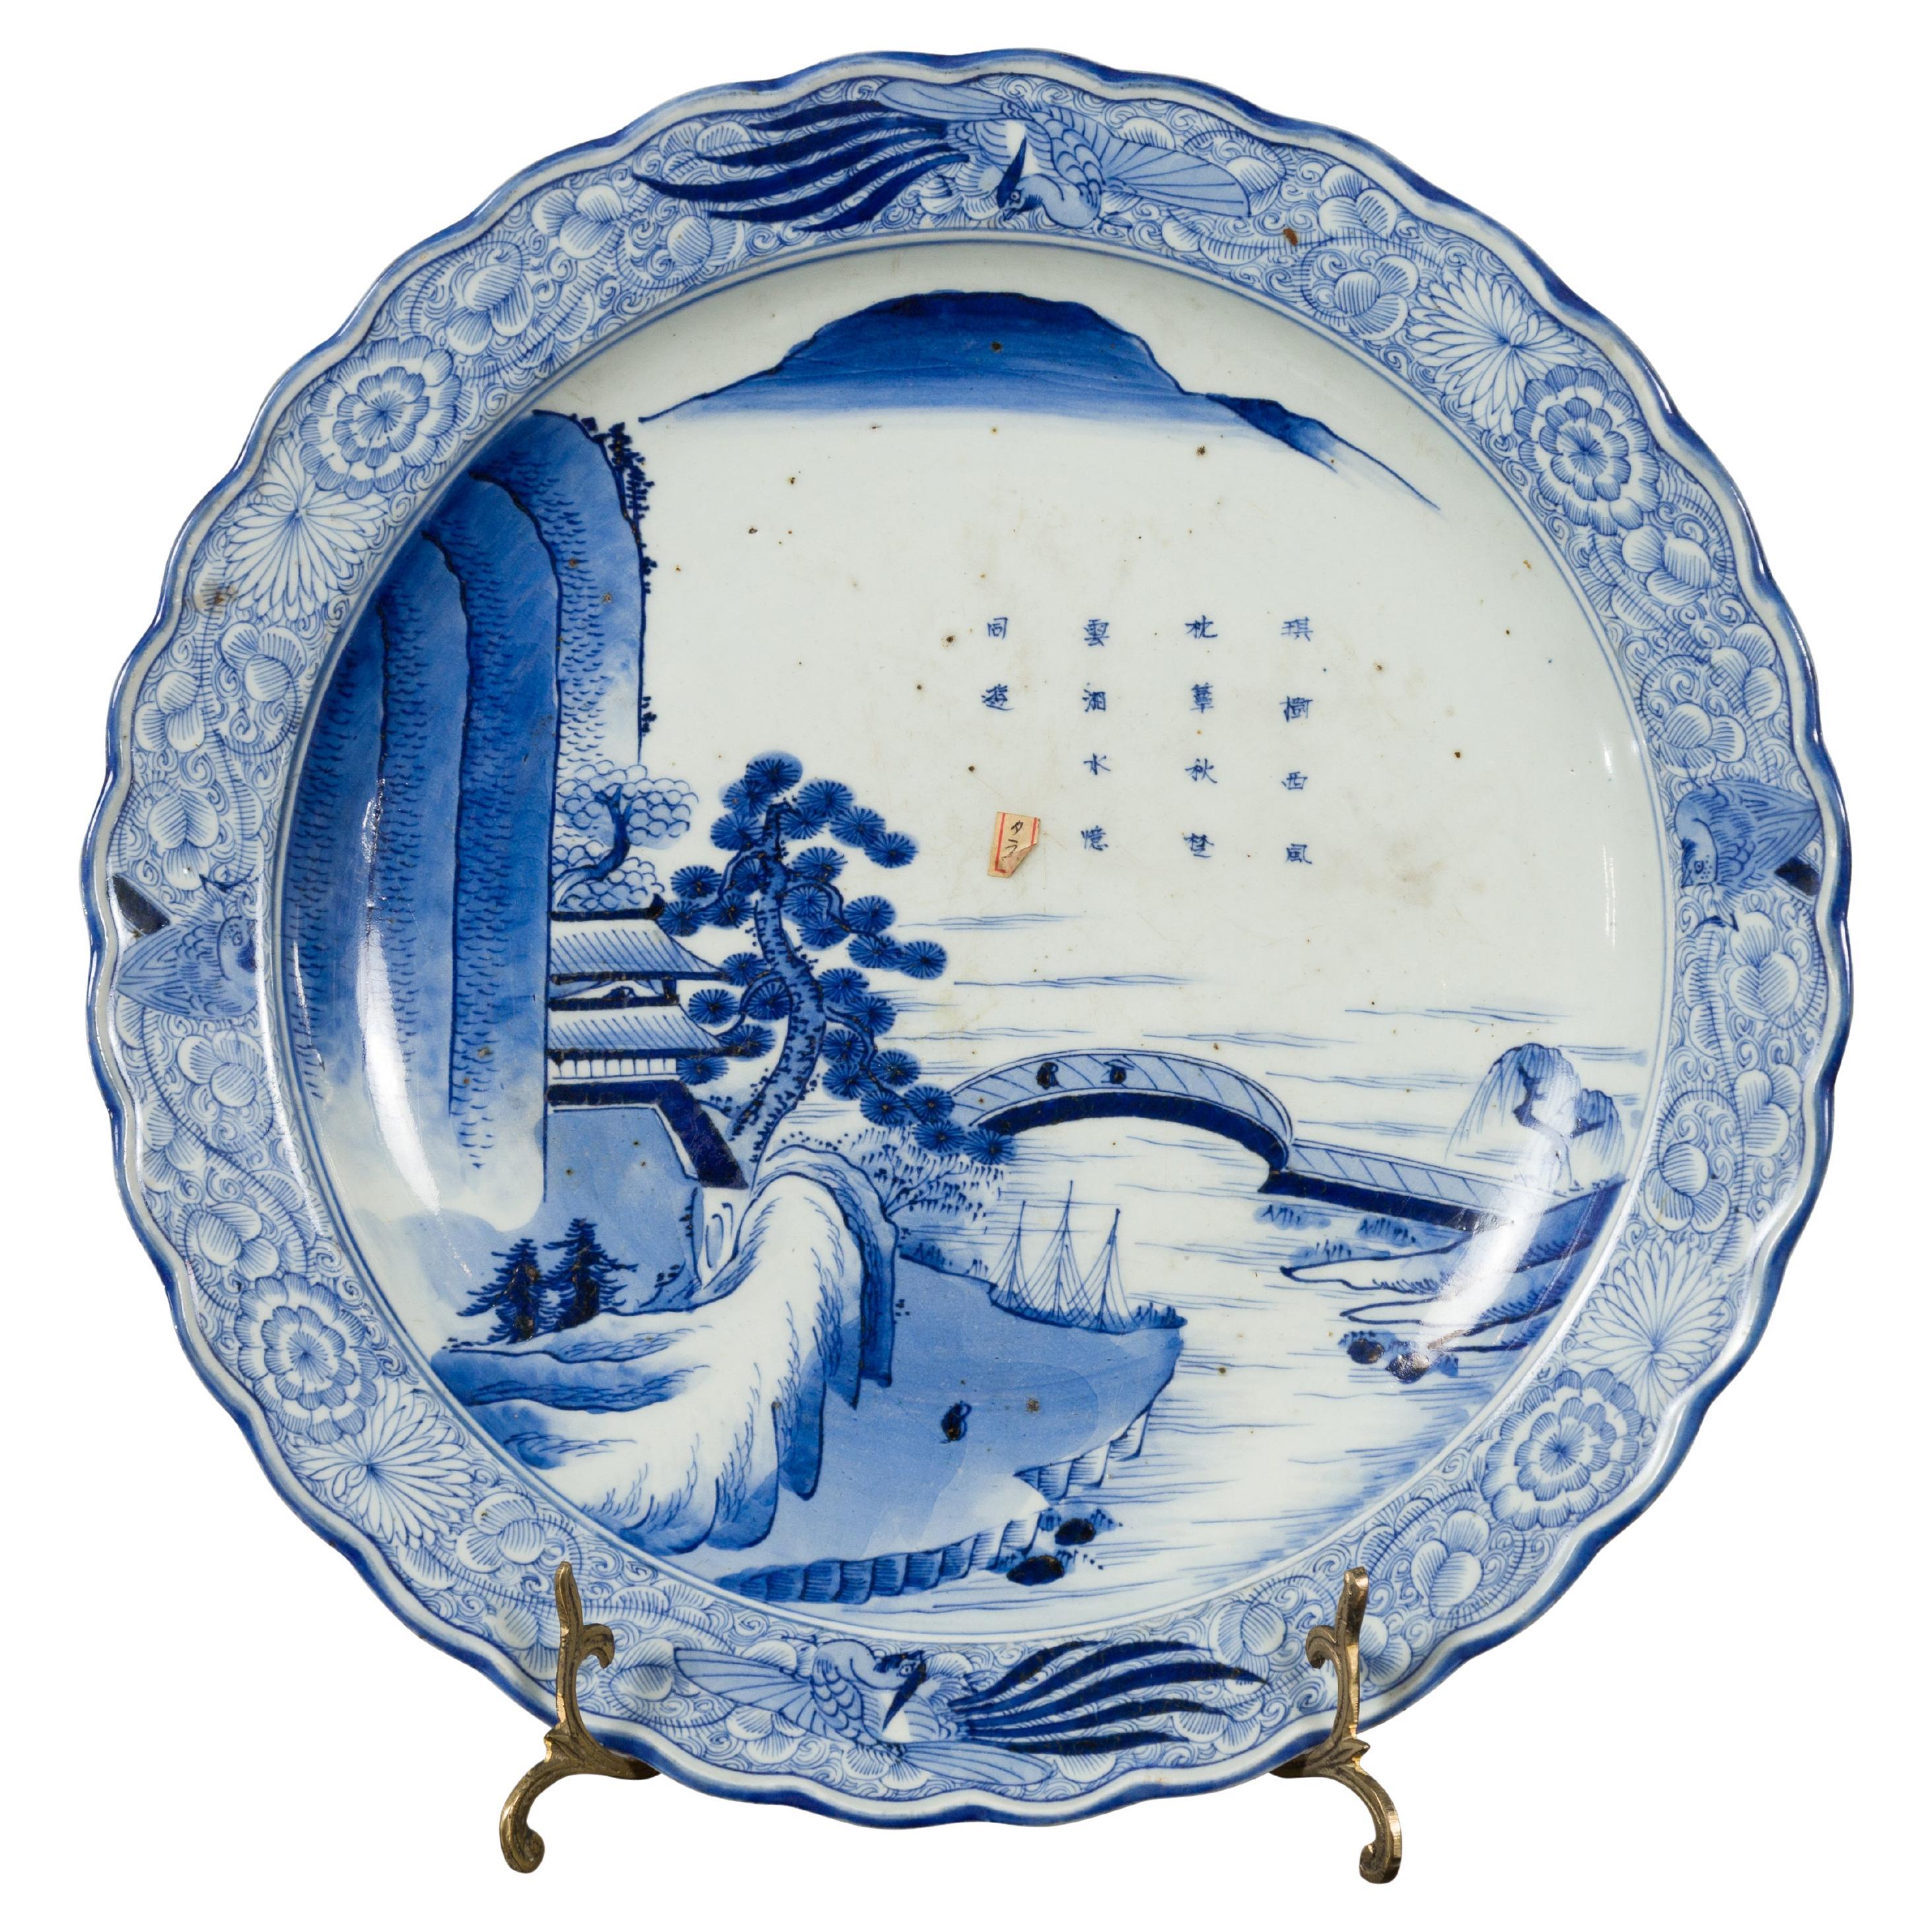 Assiette en porcelaine Imari japonaise du 19ème siècle avec décor peint en bleu et blanc